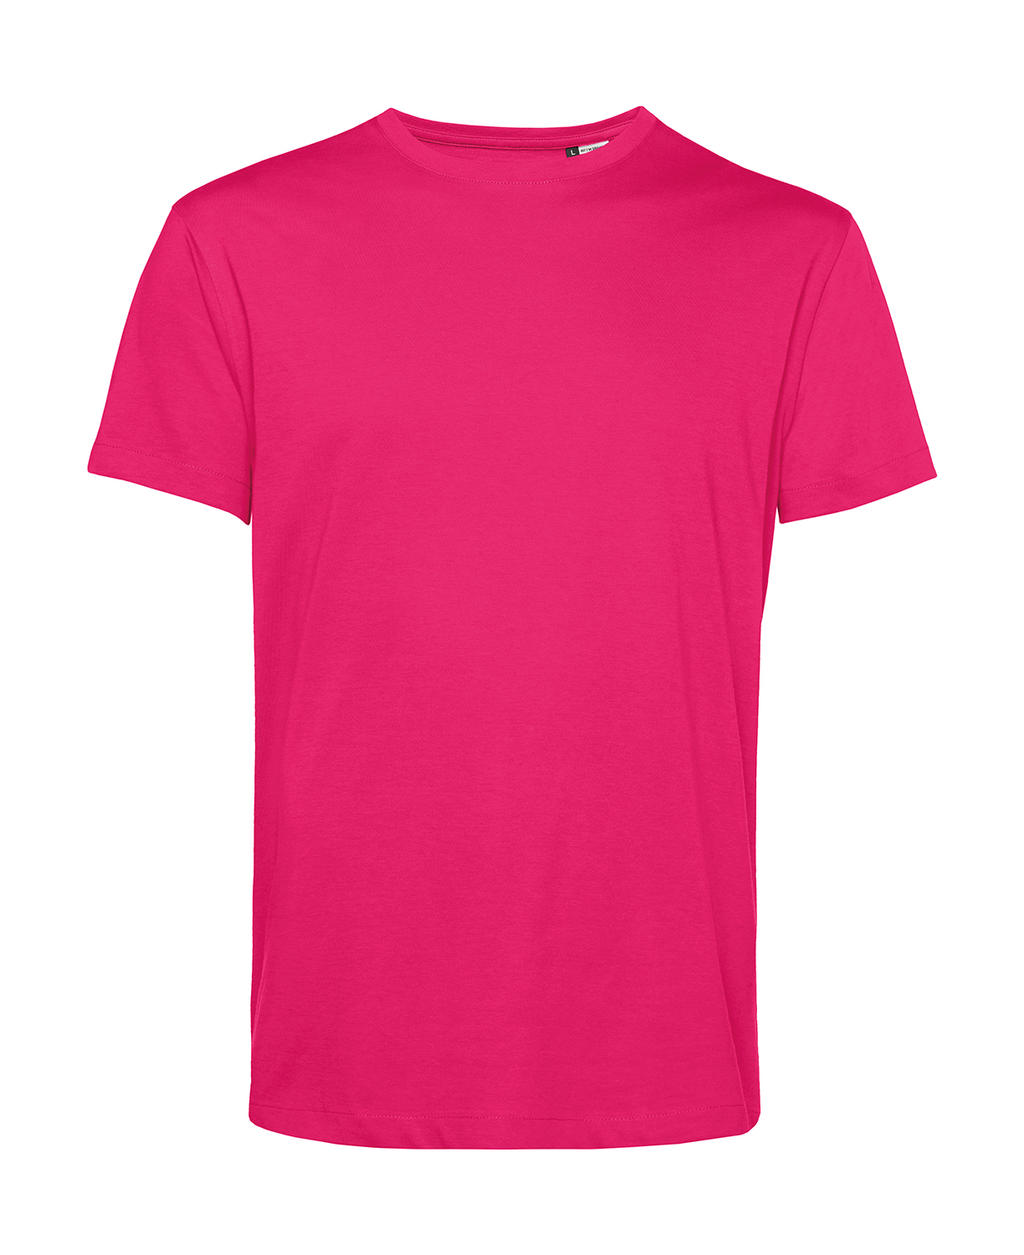 Tričko BC Organic Inspire E150 - tmavě růžové, 3XL